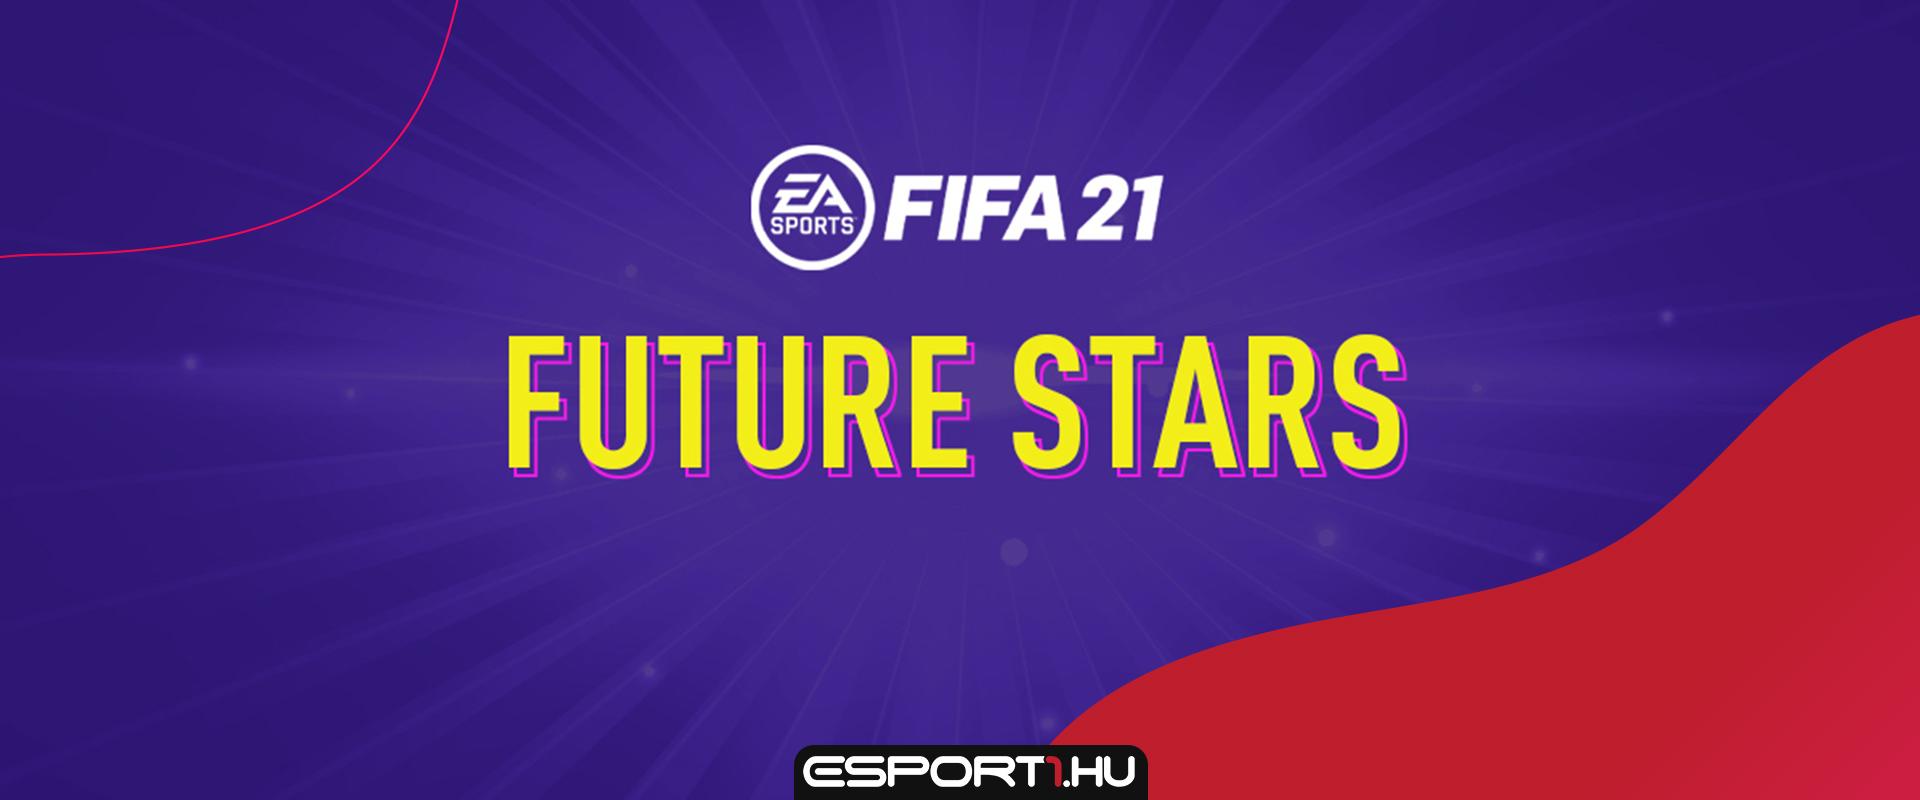 Két Future Stars kártya hibás a FIFA 21-ben, reagált az EA